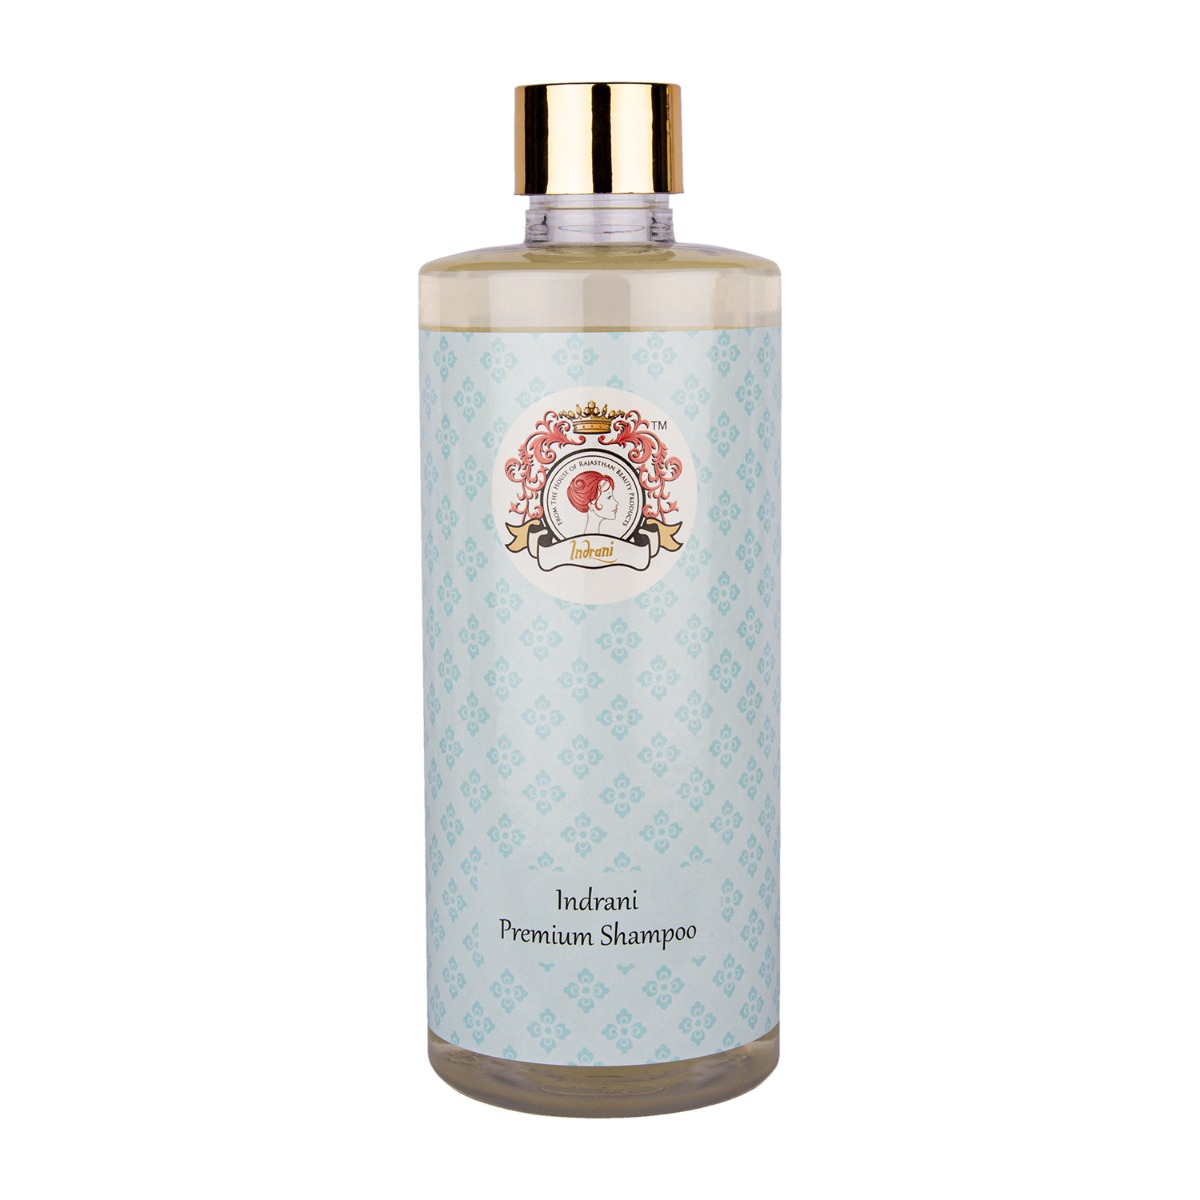 Indrani Premium Shampoo, 500ml